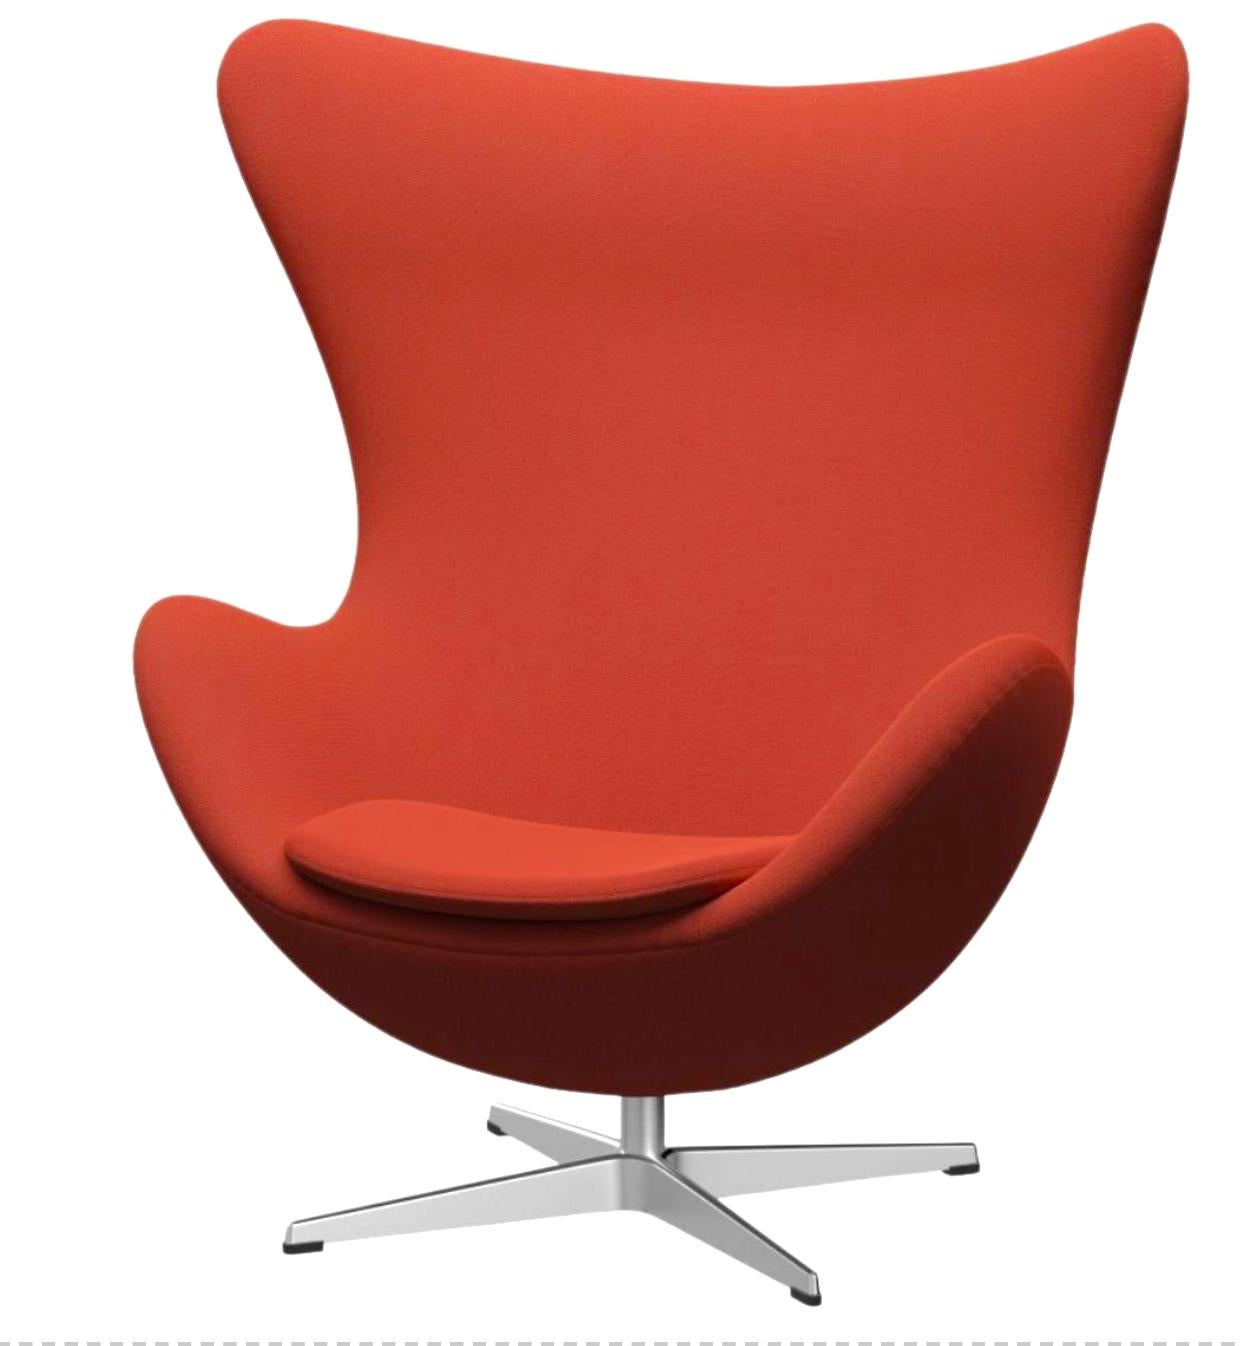 Der Egg Stuhl von Arne Jacobsen ist ein Meisterwerk des dänischen Designs. Jacobsen fand die perfekte Form für den Stuhl, indem er in seiner Garage mit Draht und Gips experimentierte. Heute gilt der Egg-Stuhl weltweit als einer der größten Erfolge